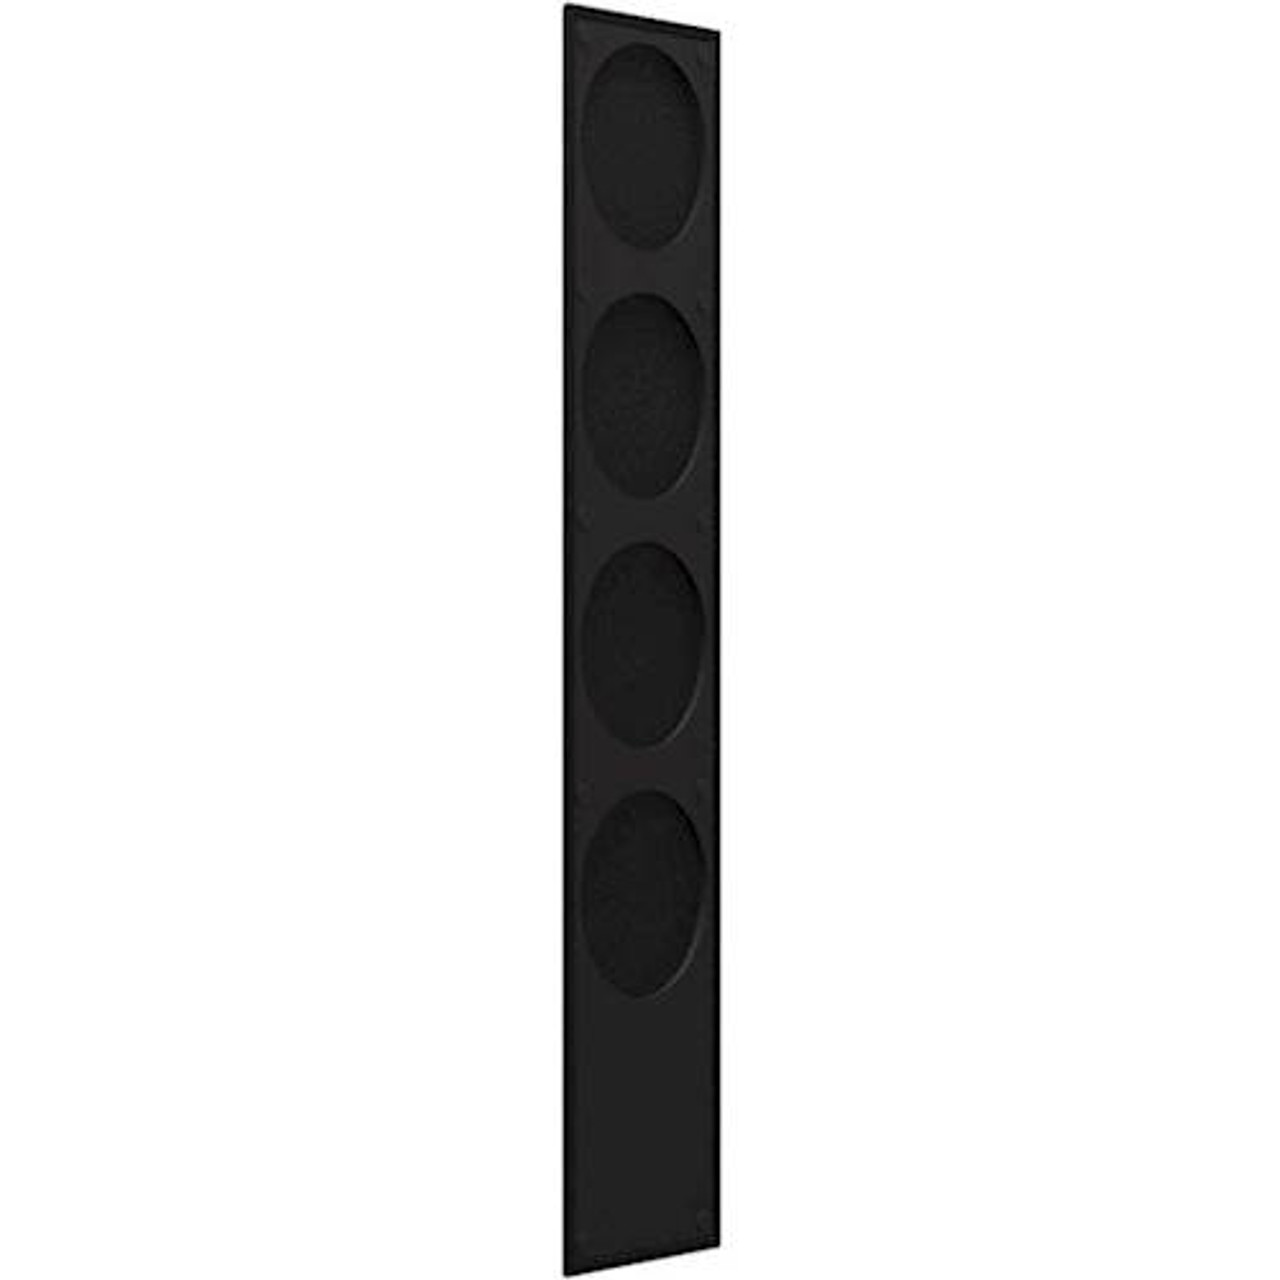 KEF - Cloth Grille for Q550 Floorstanding Speaker (Each) - Black